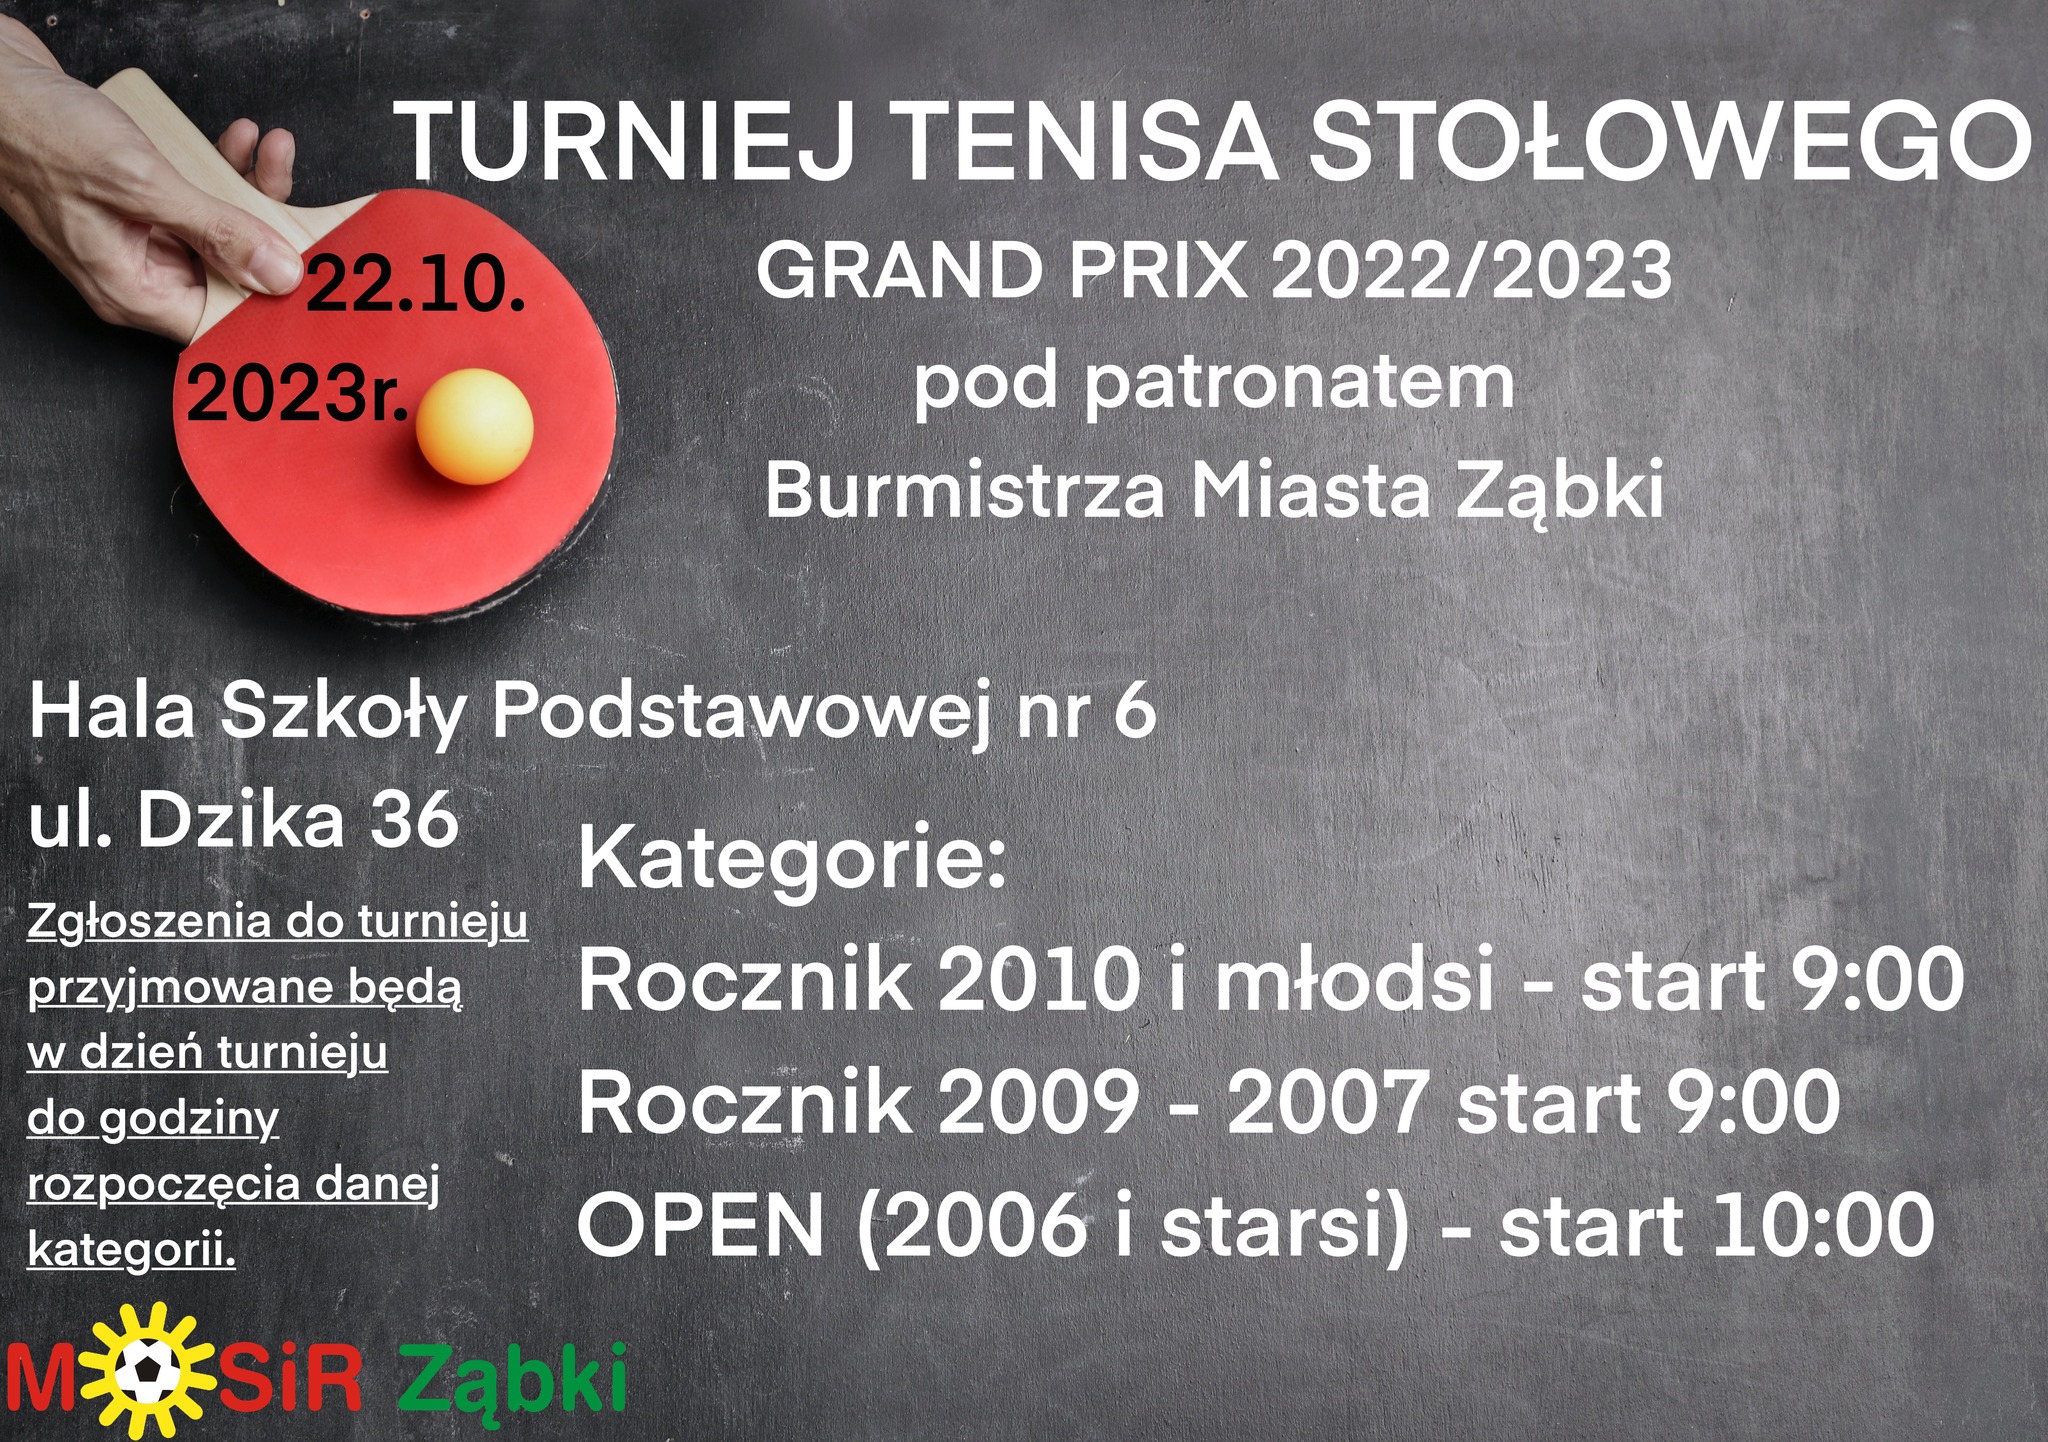 Plakat turnieju Grand Prix’2022/2023 w tenisie stołowym pod patronatem Burmistrza Miasta Ząbki - termin 2